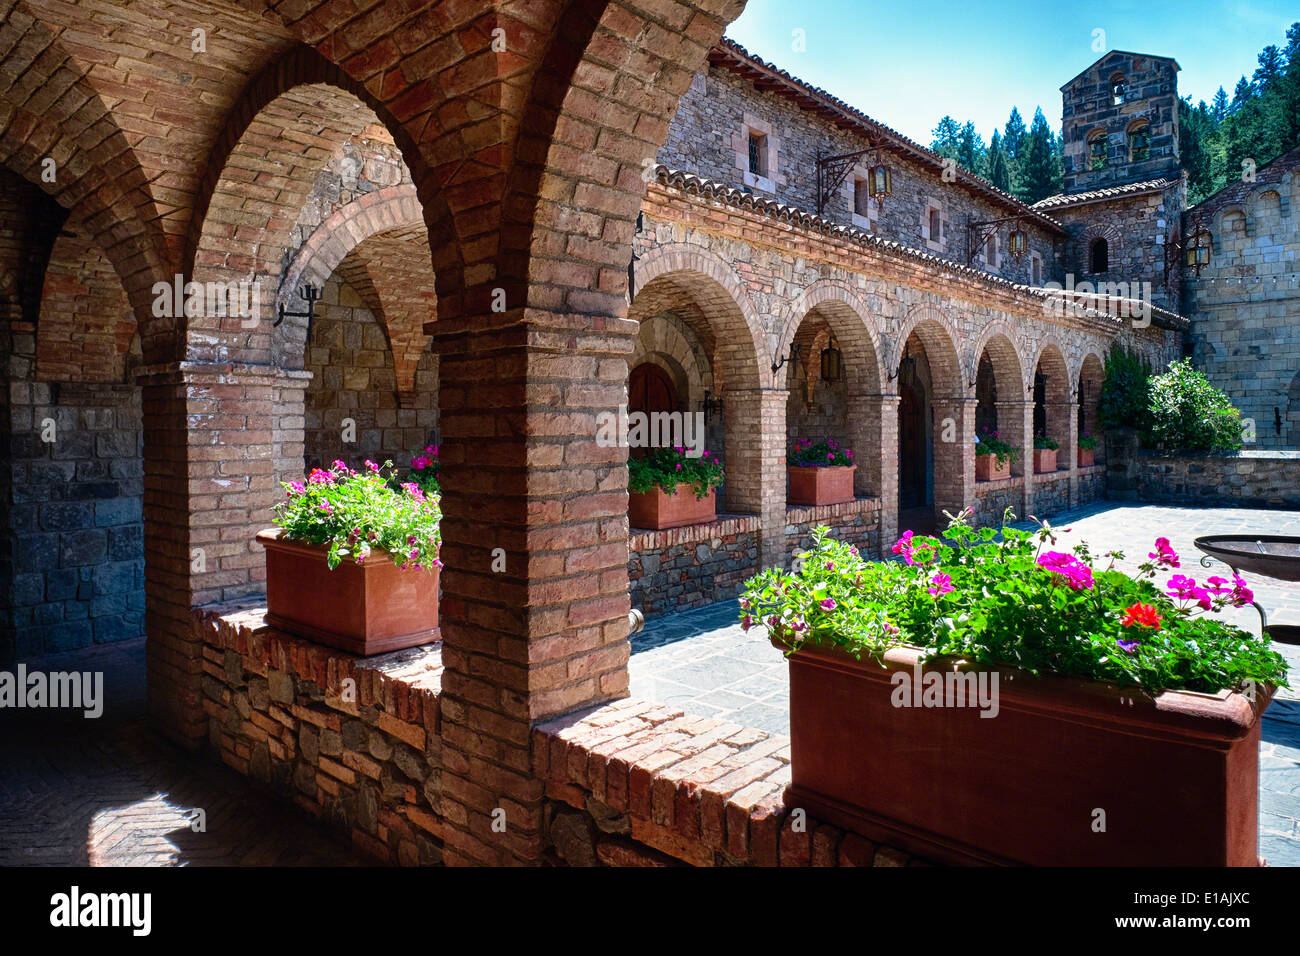 Kolonnade und einem toskanischen Stil Burghof; Castello de Amorosa Winerty Calistoga, Napa Valley, Kalifornien Stockfoto